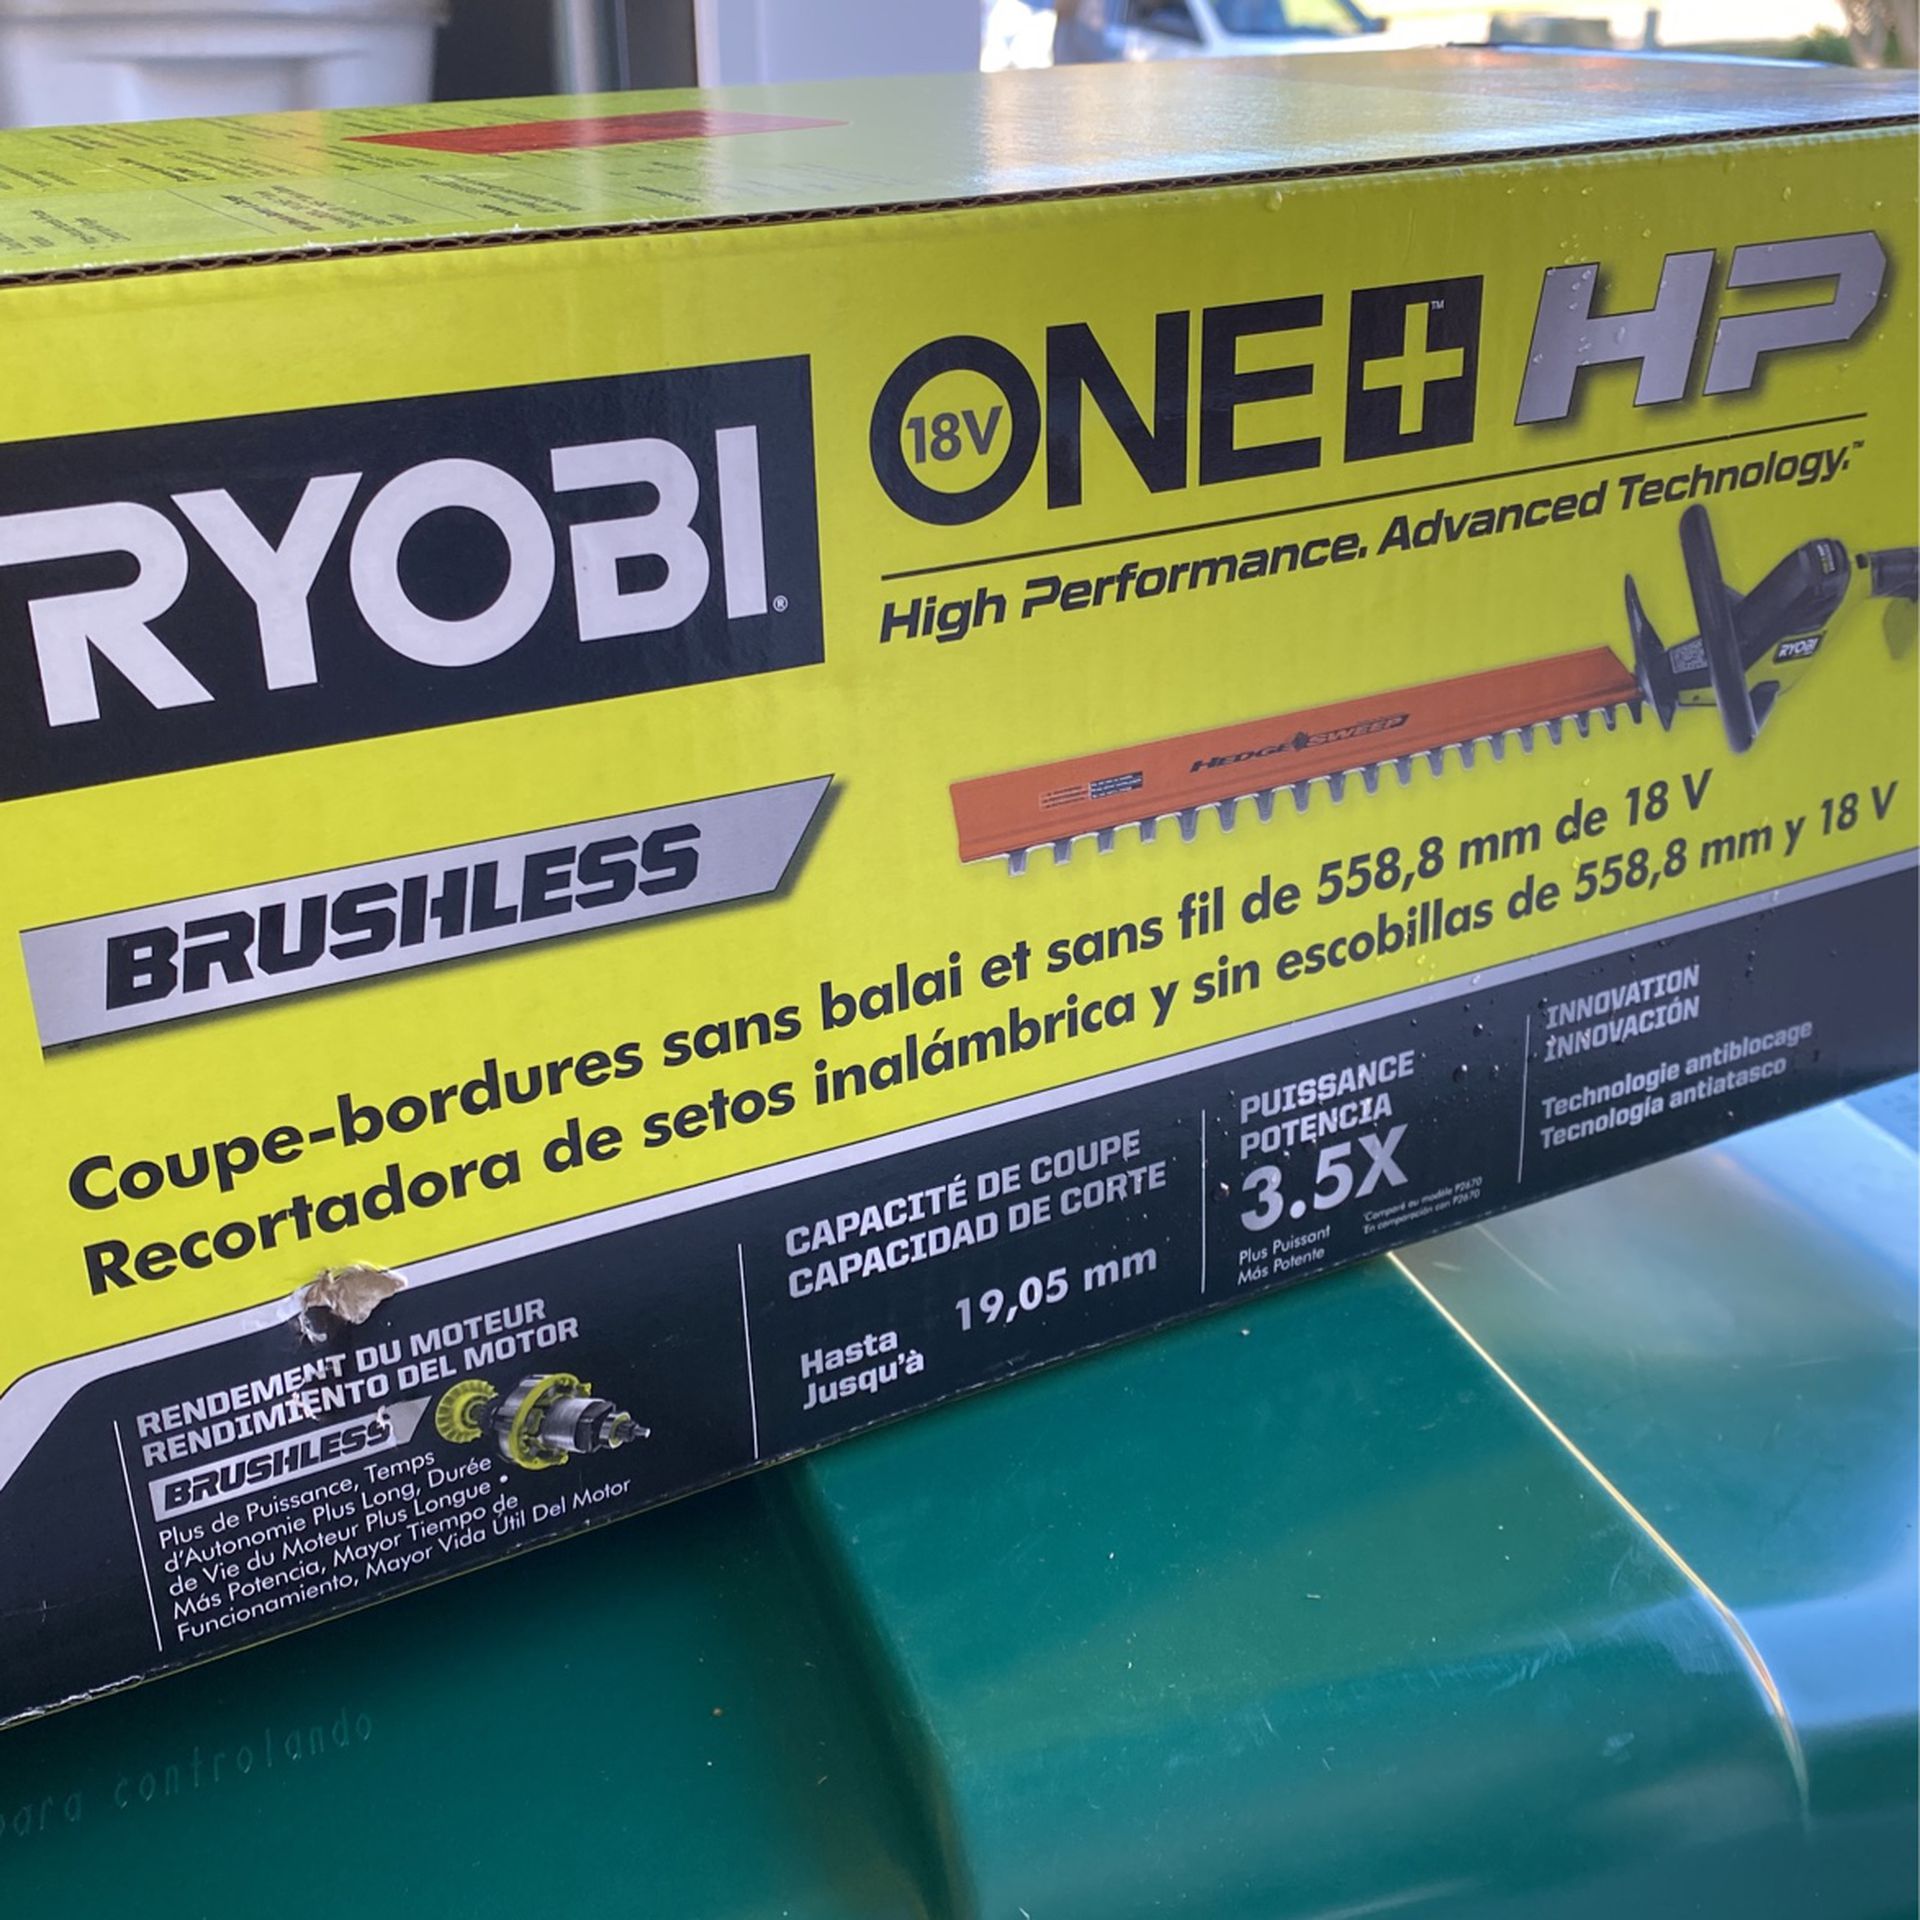 Ryobi Brushless Hedge Trimmer   18 Volt   